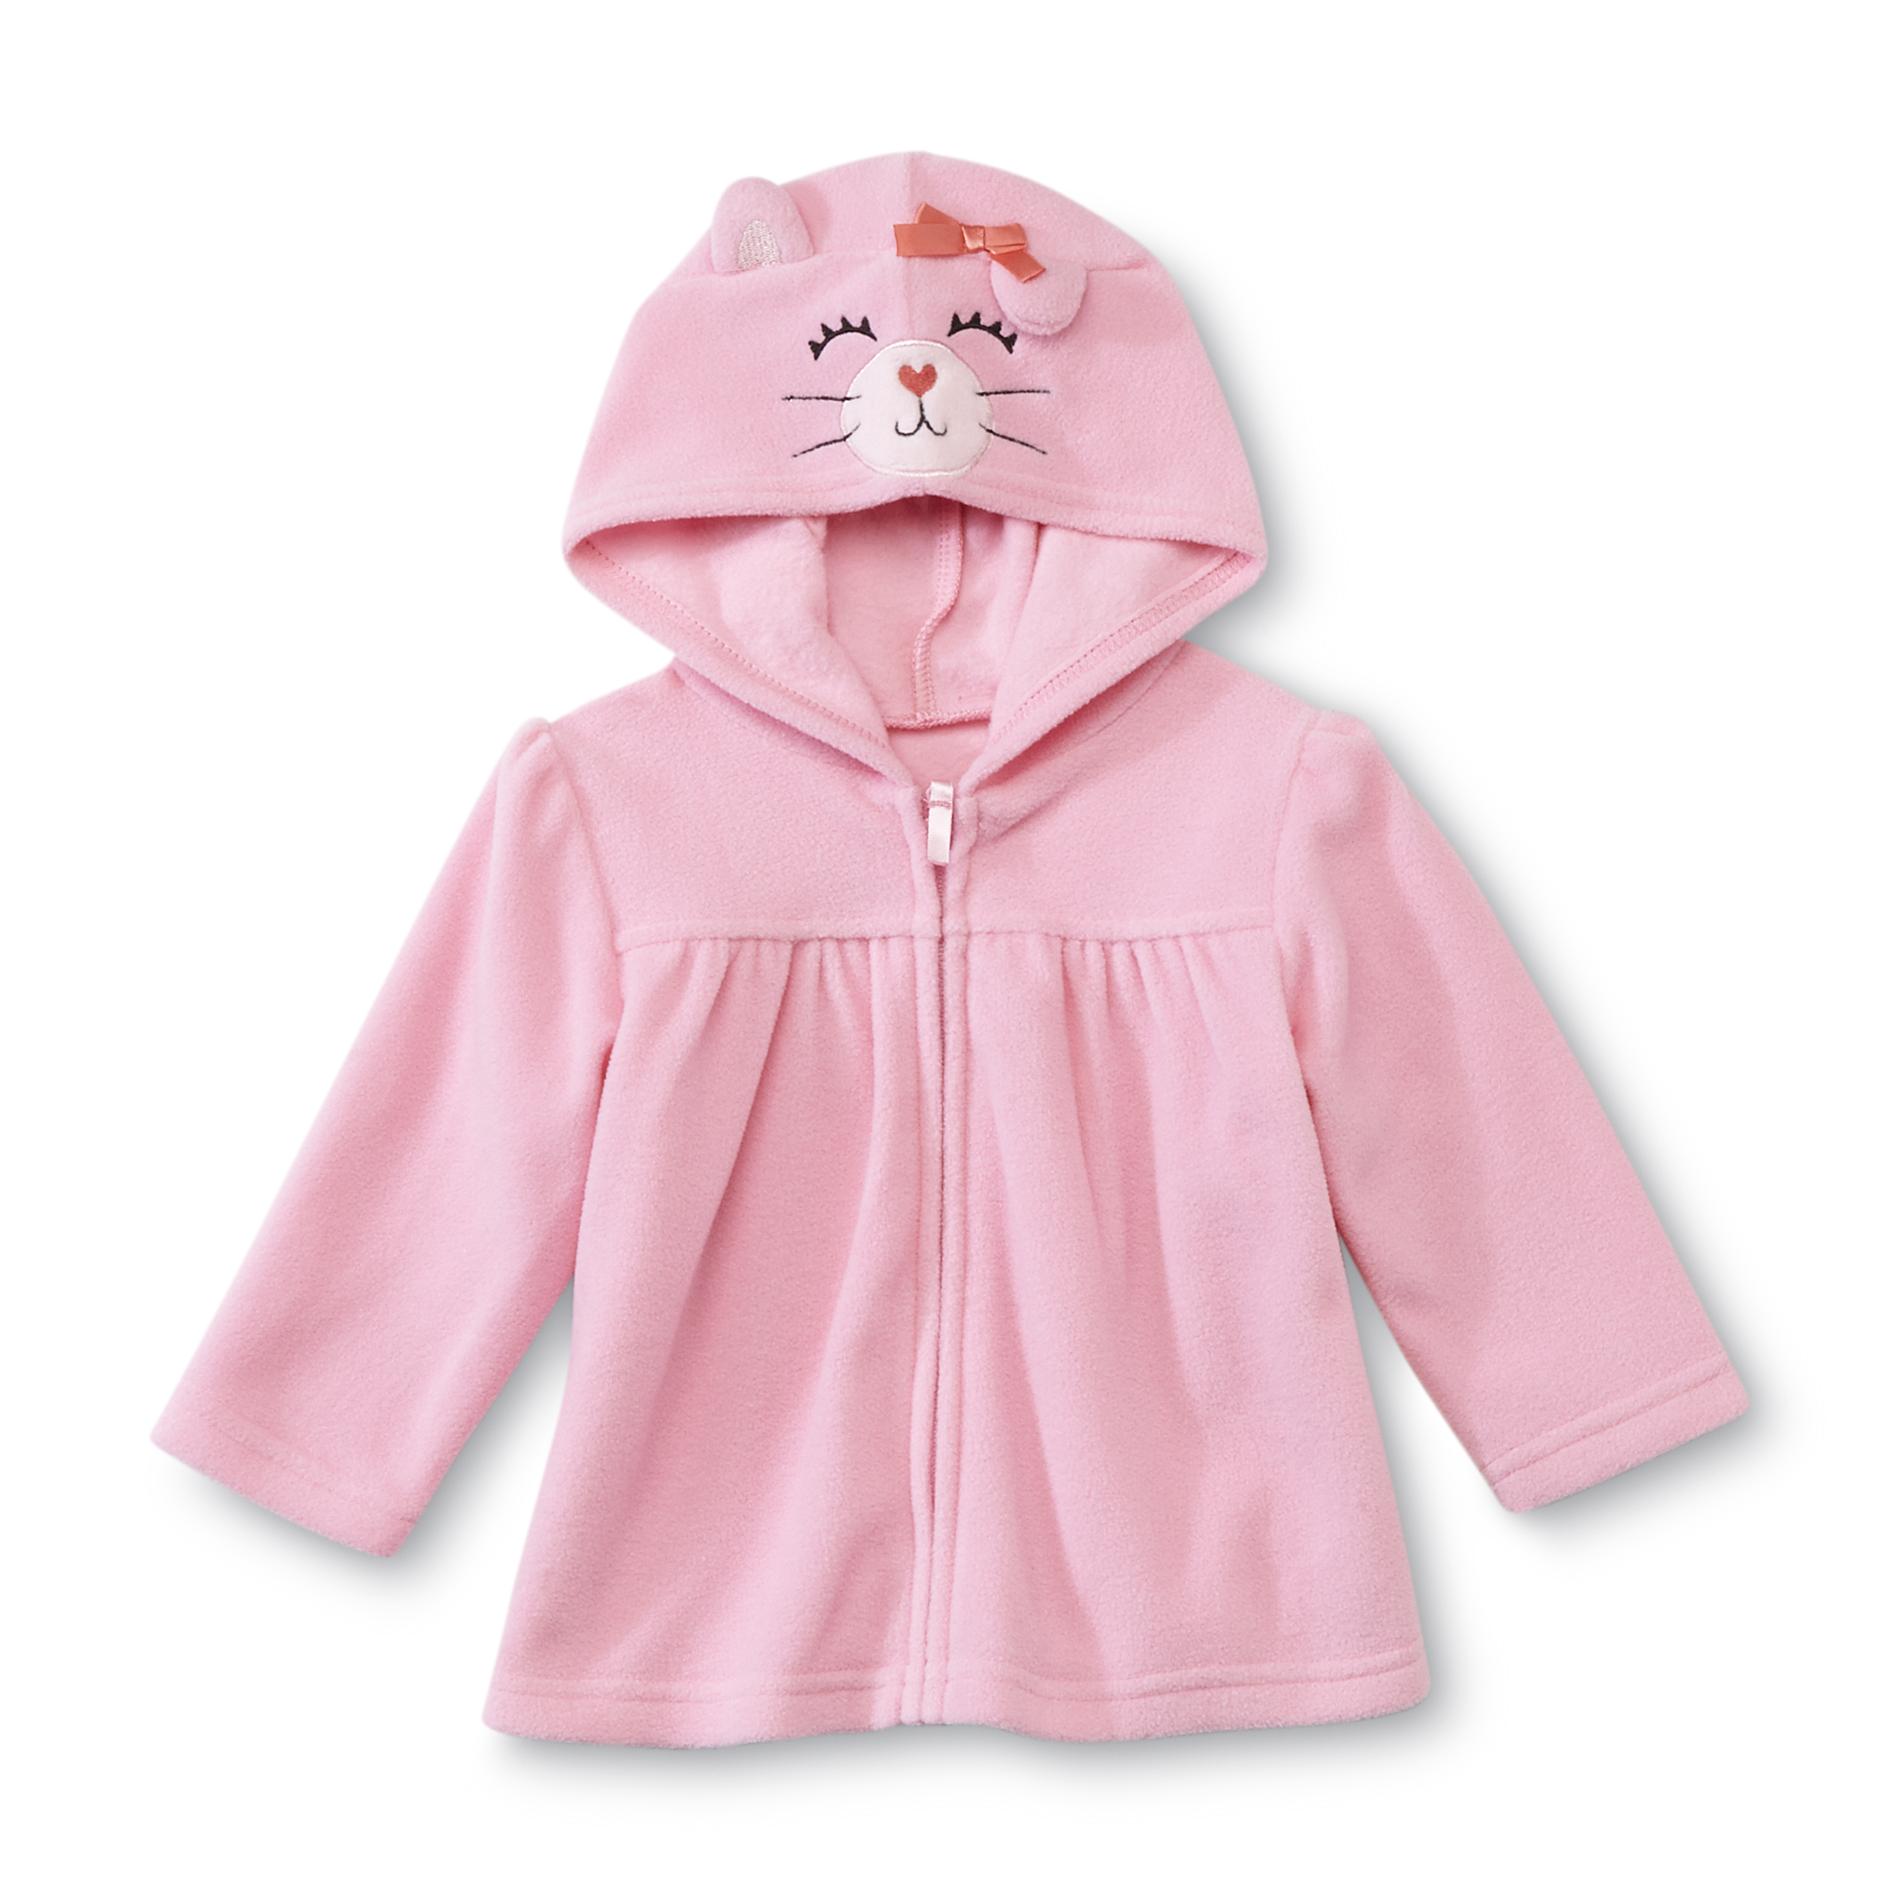 Small Wonders Newborn Girl's Critter Hoodie Jacket - Kitty